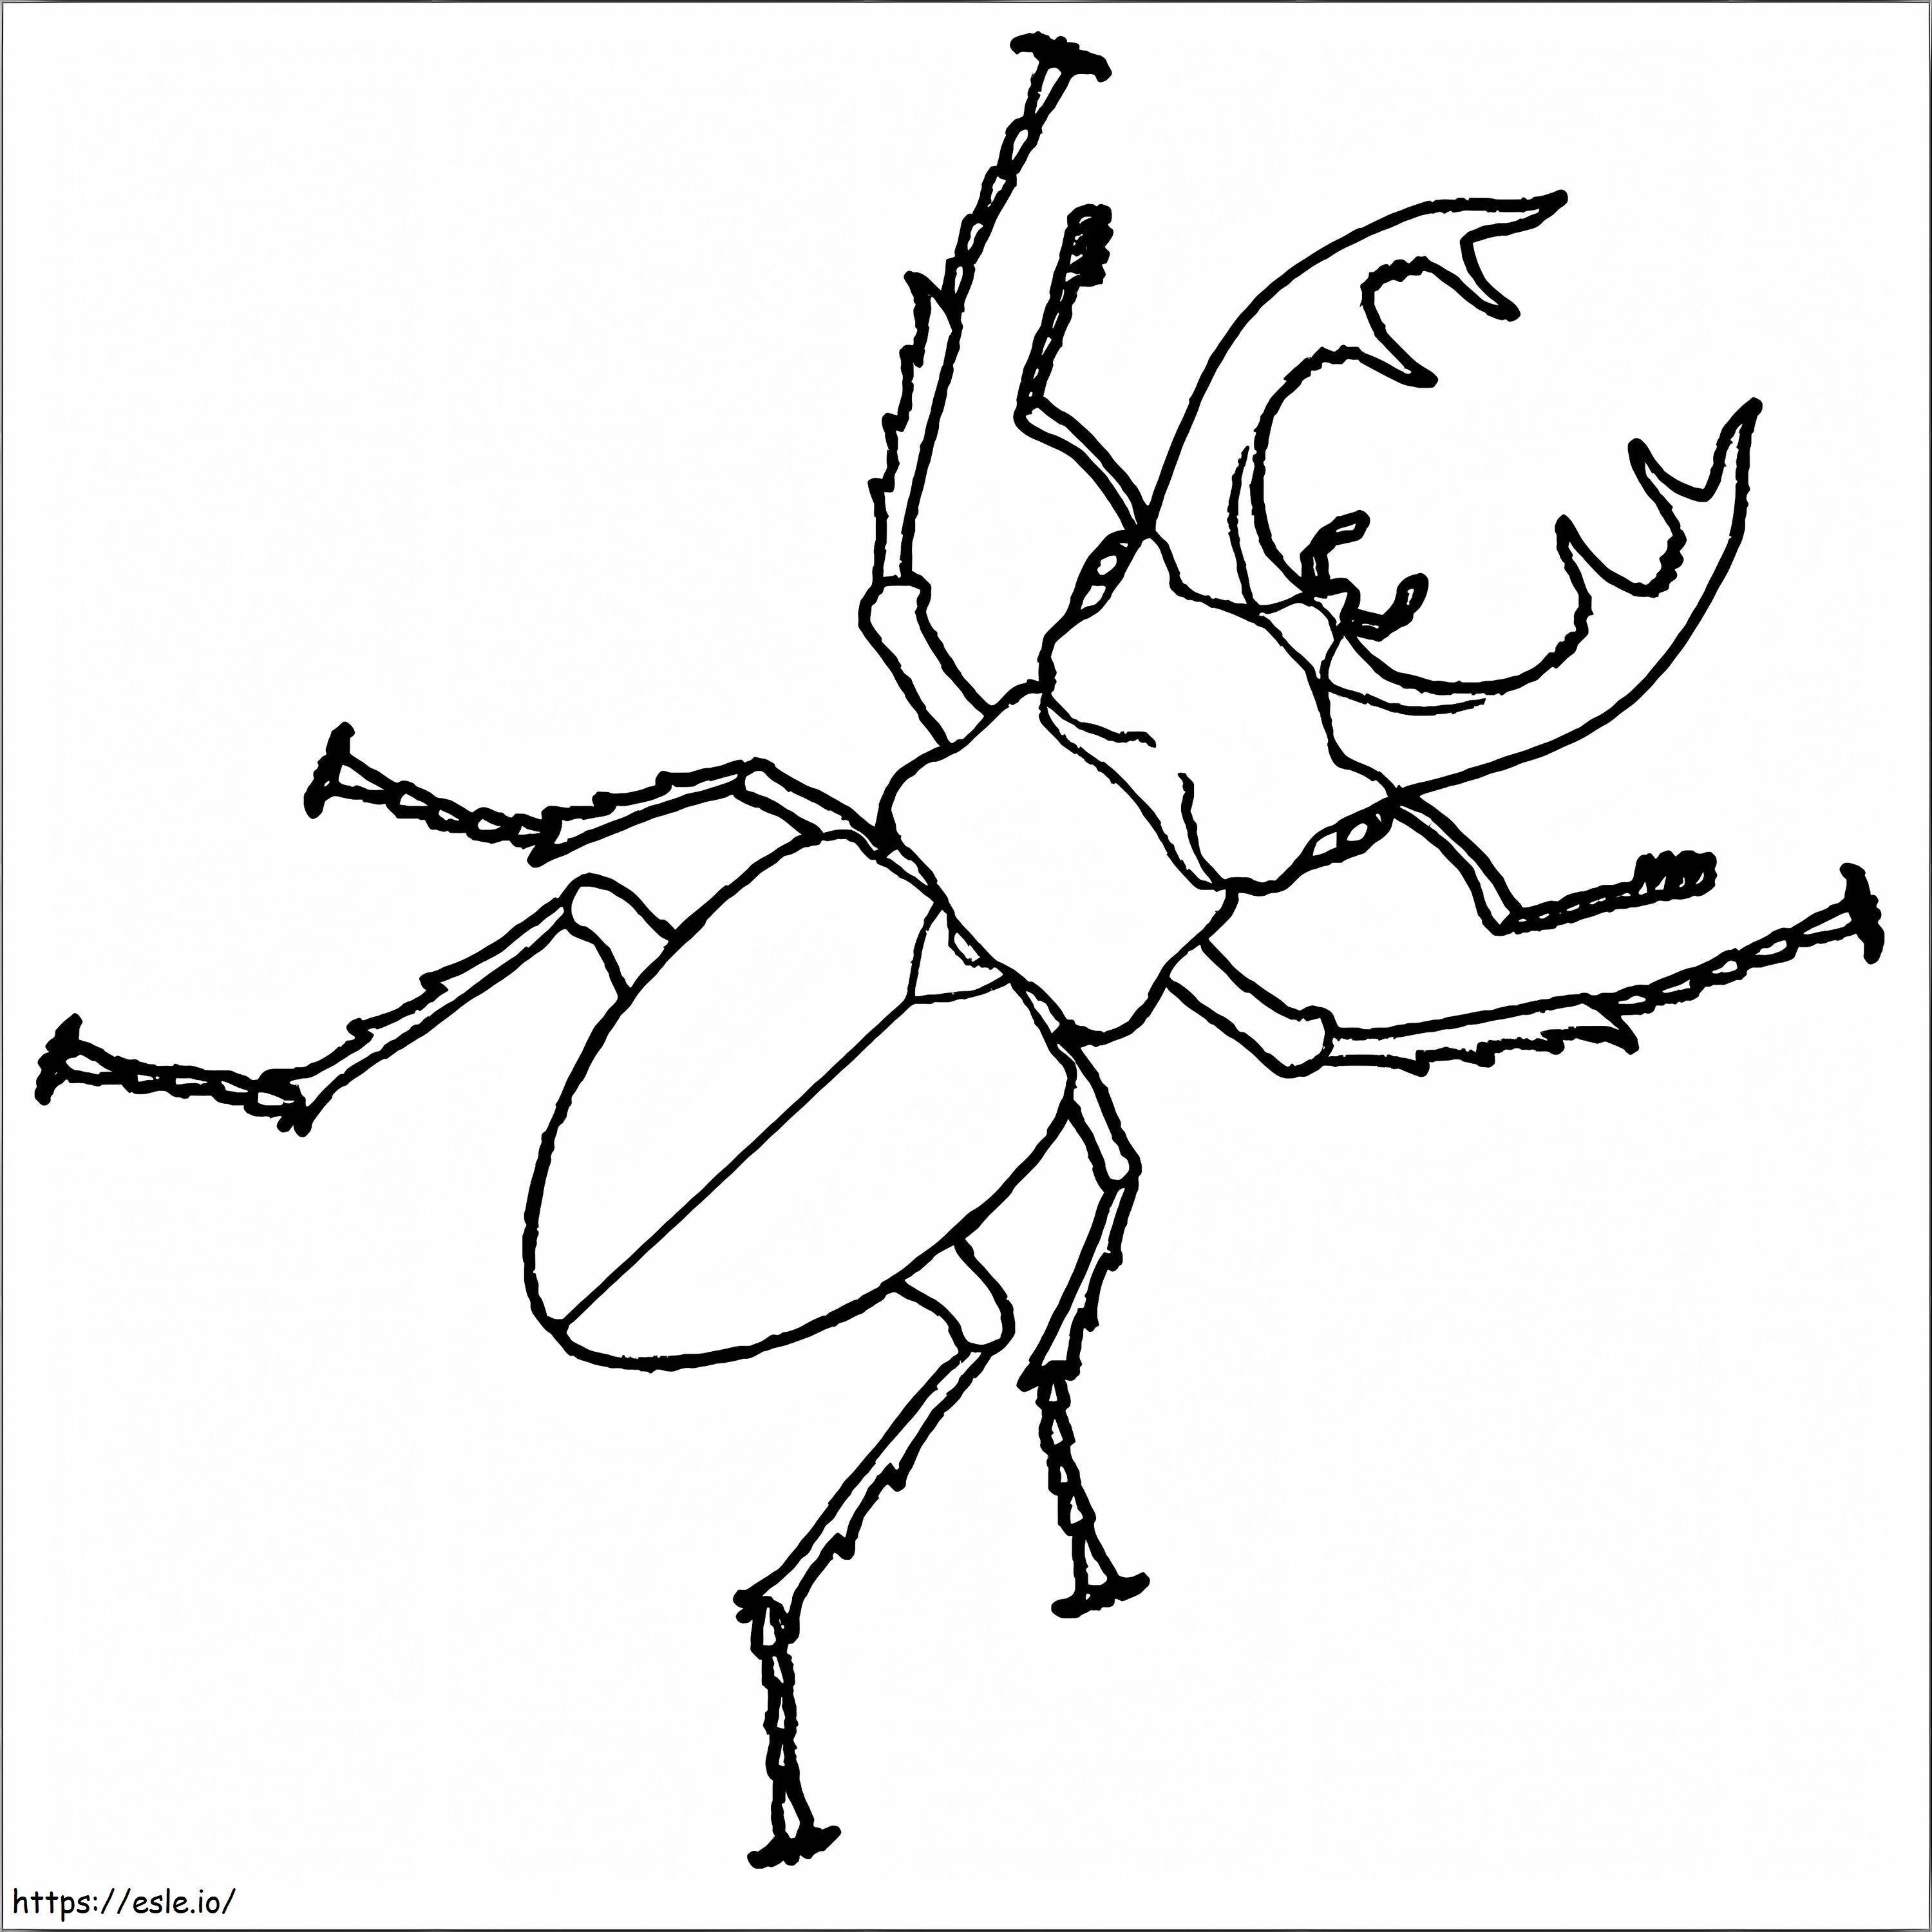 Escarabajo ciervo imprimible para colorear